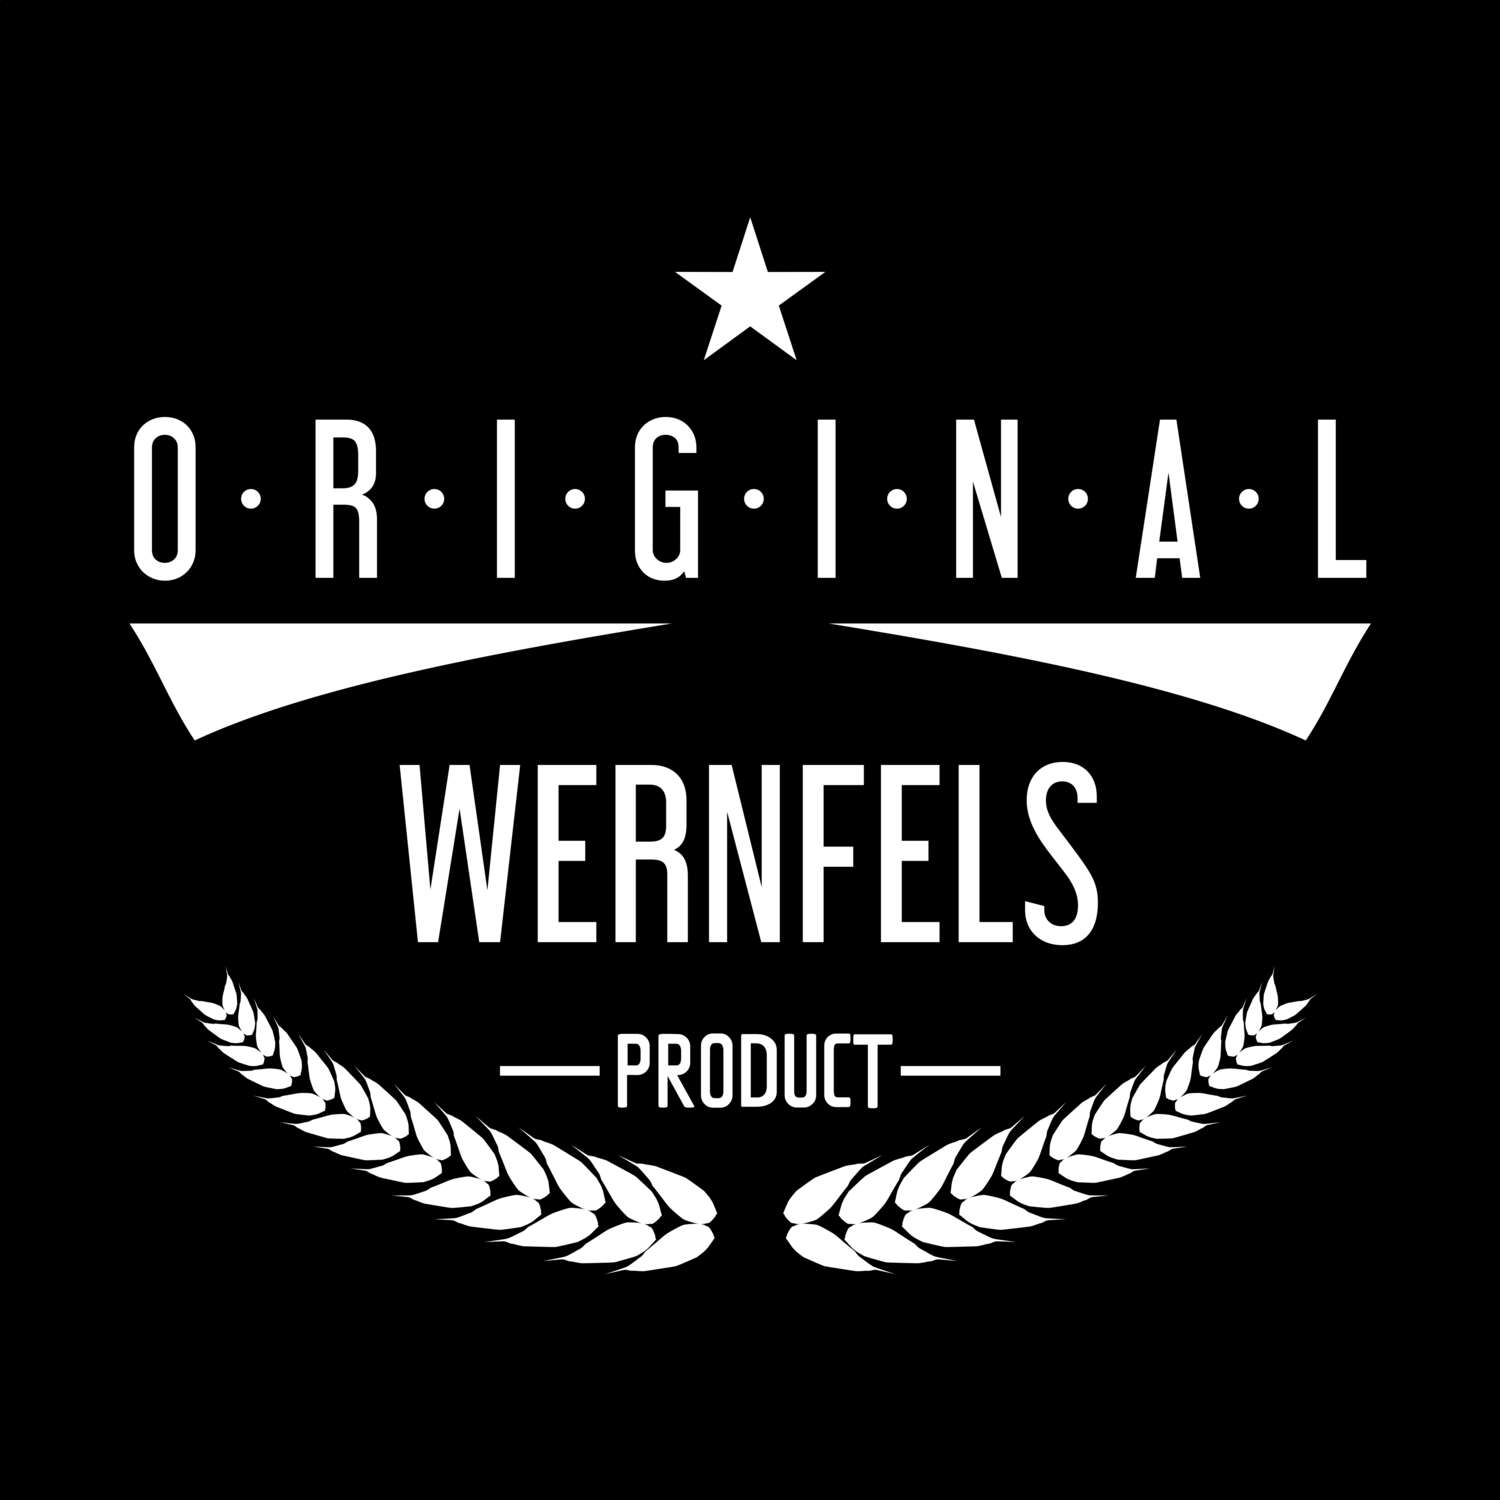 Wernfels T-Shirt »Original Product«